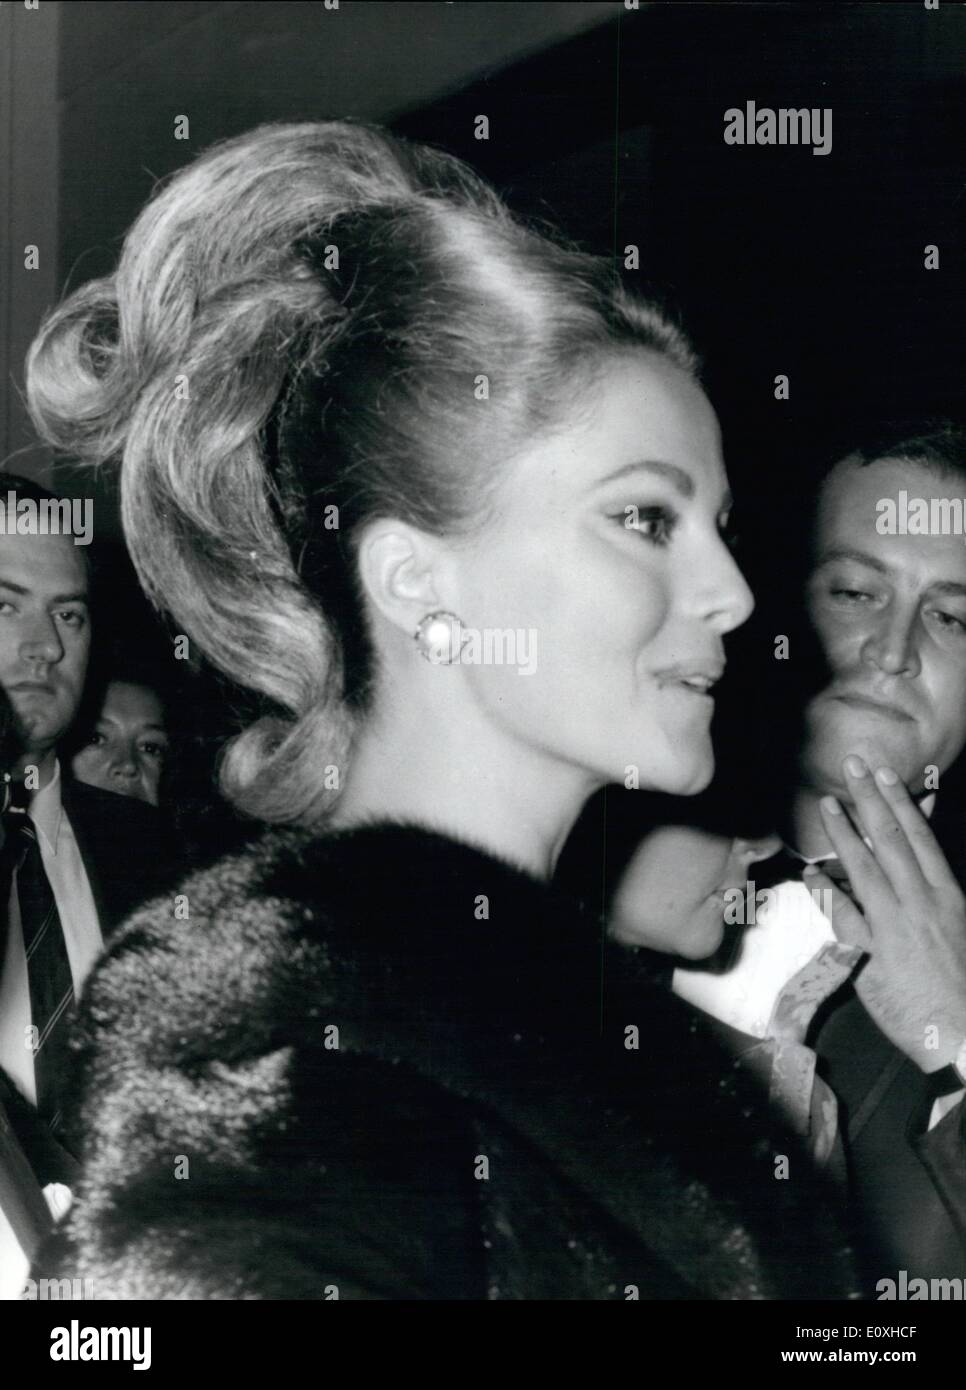 10 octobre 1966 - Soirée de gala au théâtre Sistina pour la ''Maschere d ''Argento'' (masque d'argent), le prix décerné annuellement par l'Association des journalistes de Rome. Liz Taylor et Richard Burton la nuit dernière a reçu le Silver Award en tant que masque le meilleur film italien non stars. Banque D'Images